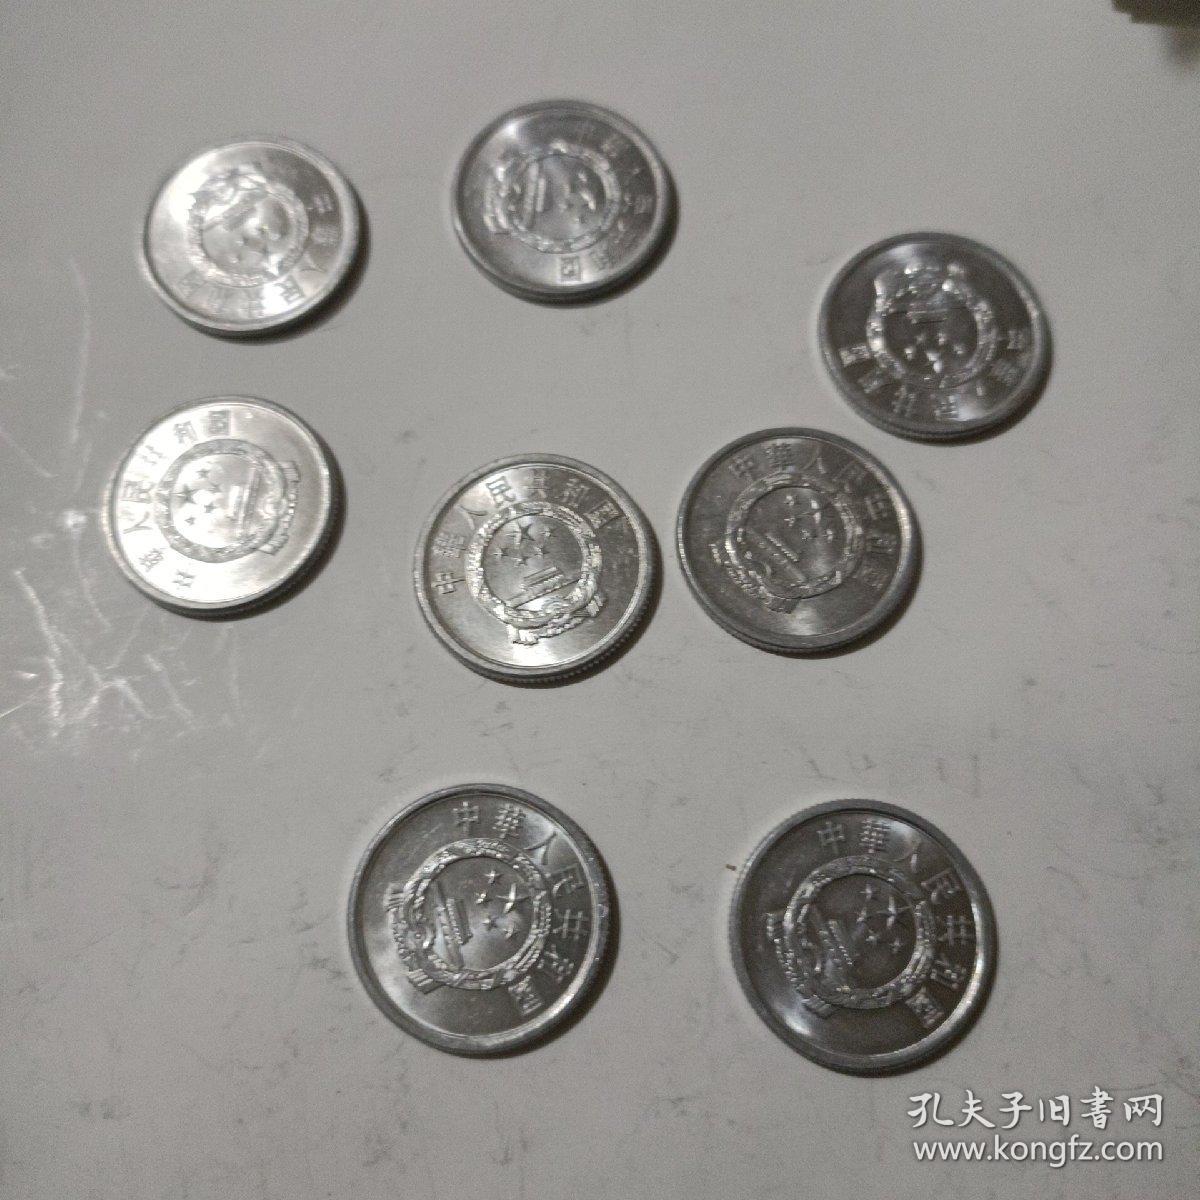 1989年2分硬币贰分错版币 保真无人工处理 带原光品新 3元一枚